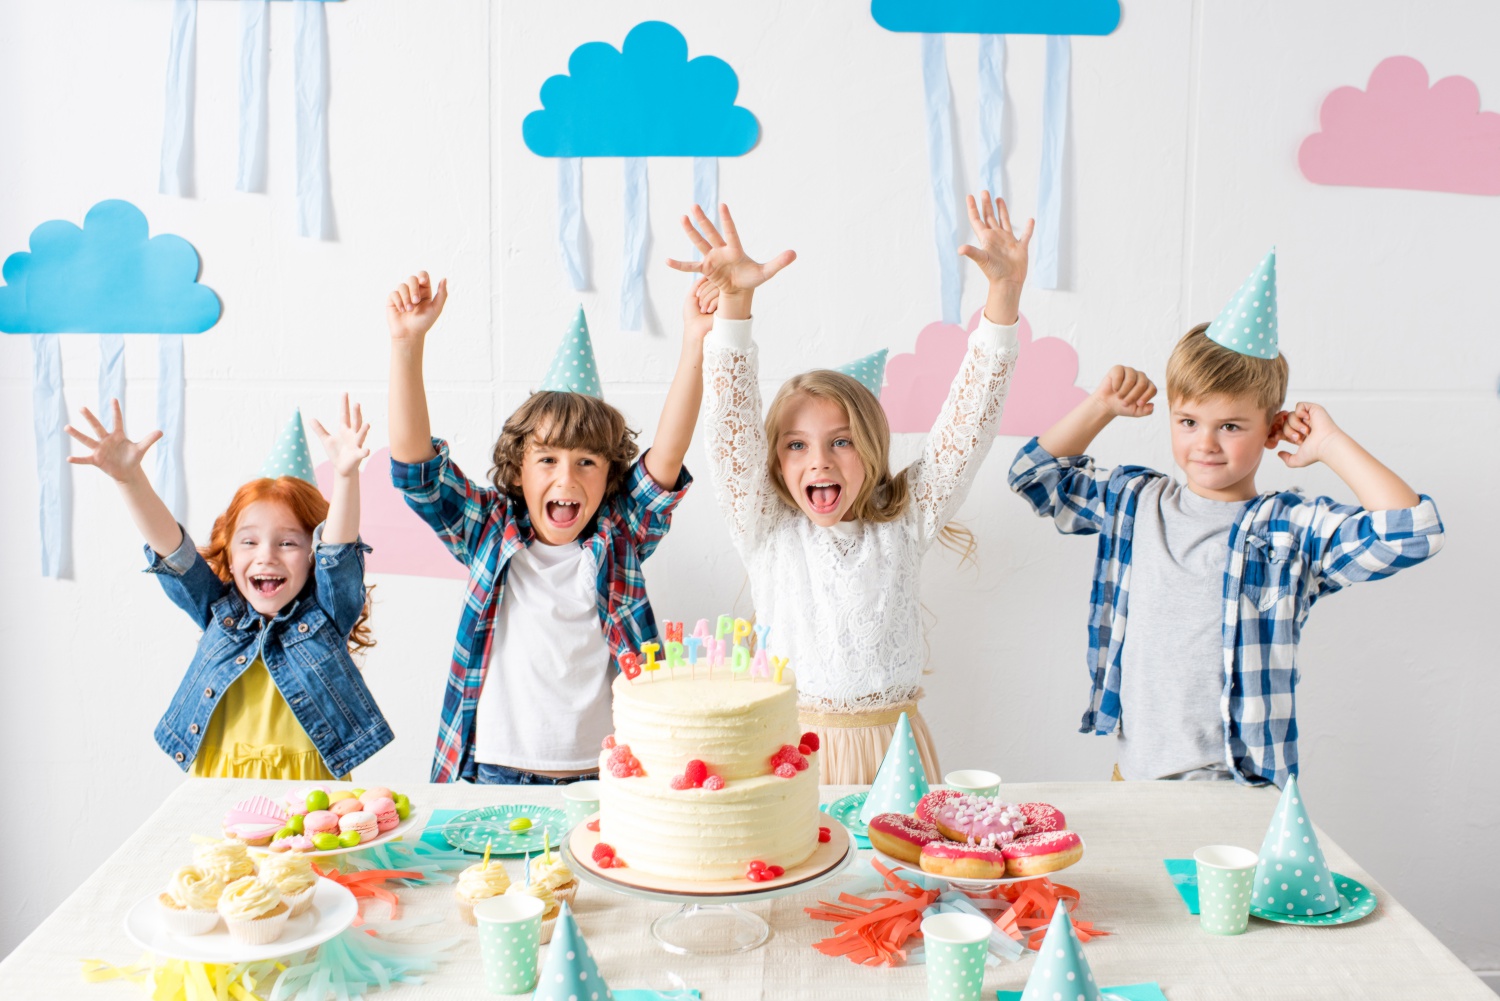 Как украсить комнату на день рождения ребенка: фото идей и DIY своими руками